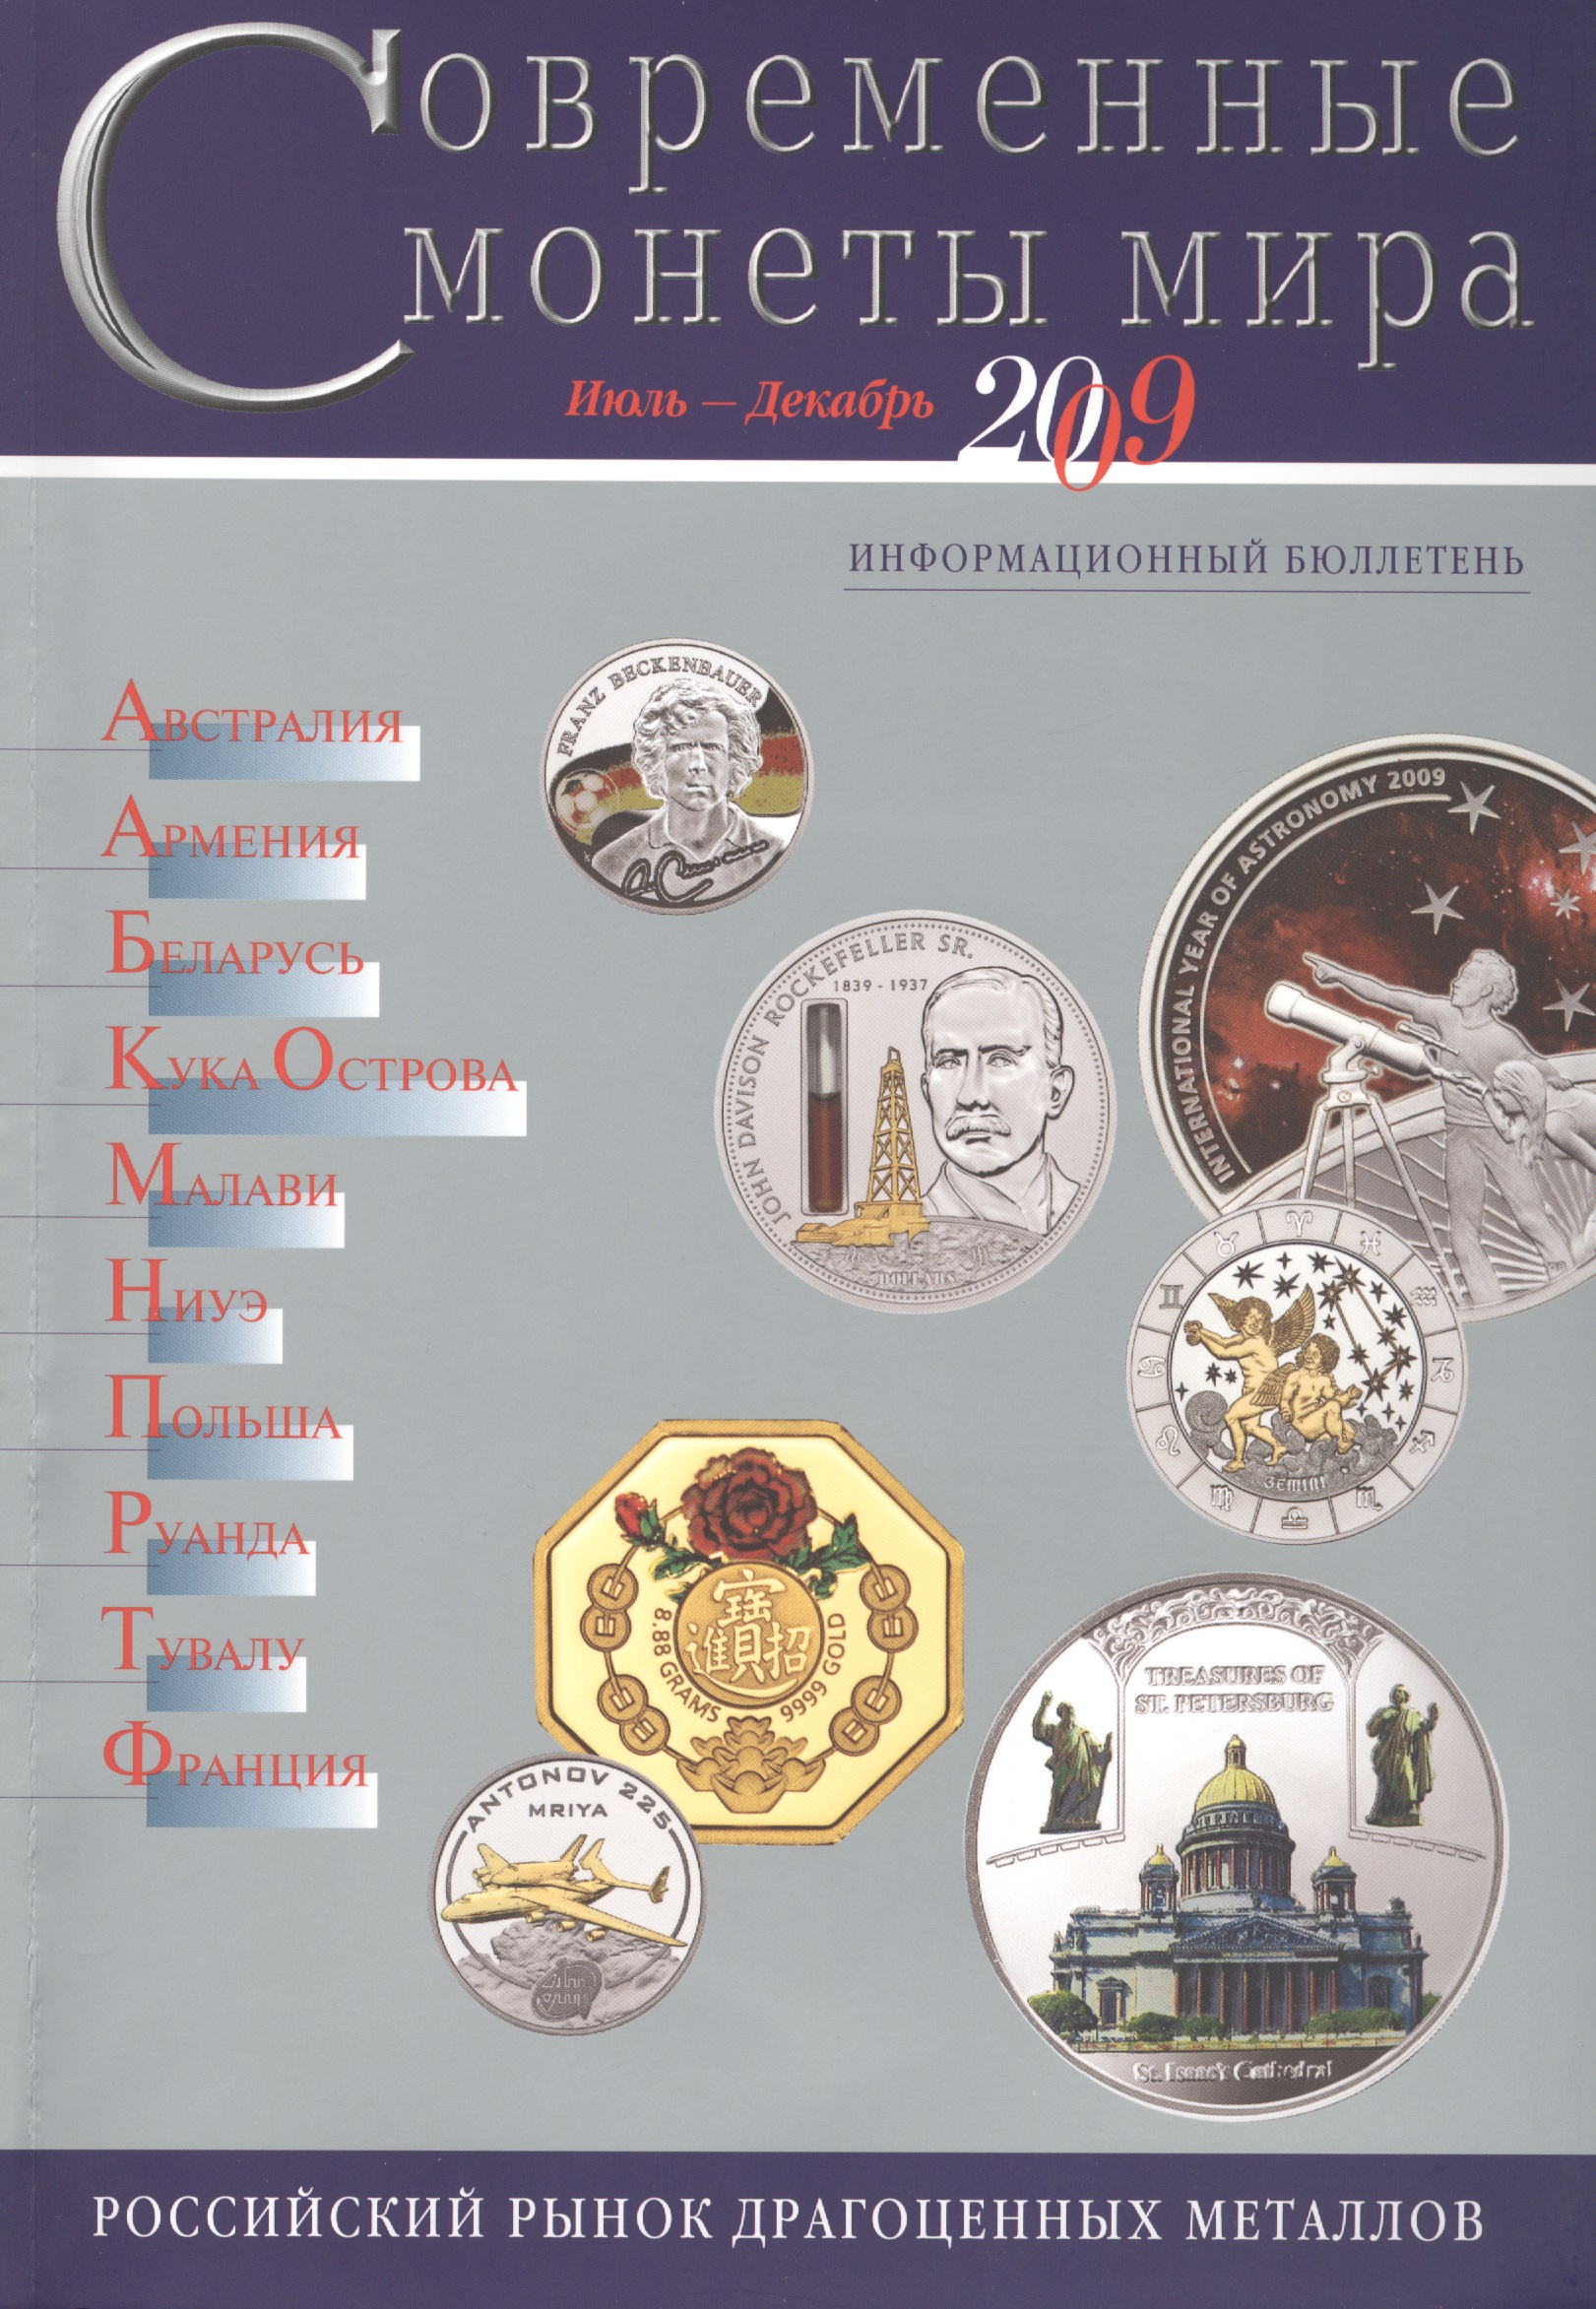 Современные монеты мира Июль-декабрь 2009 (мРосРМИзДрМет)